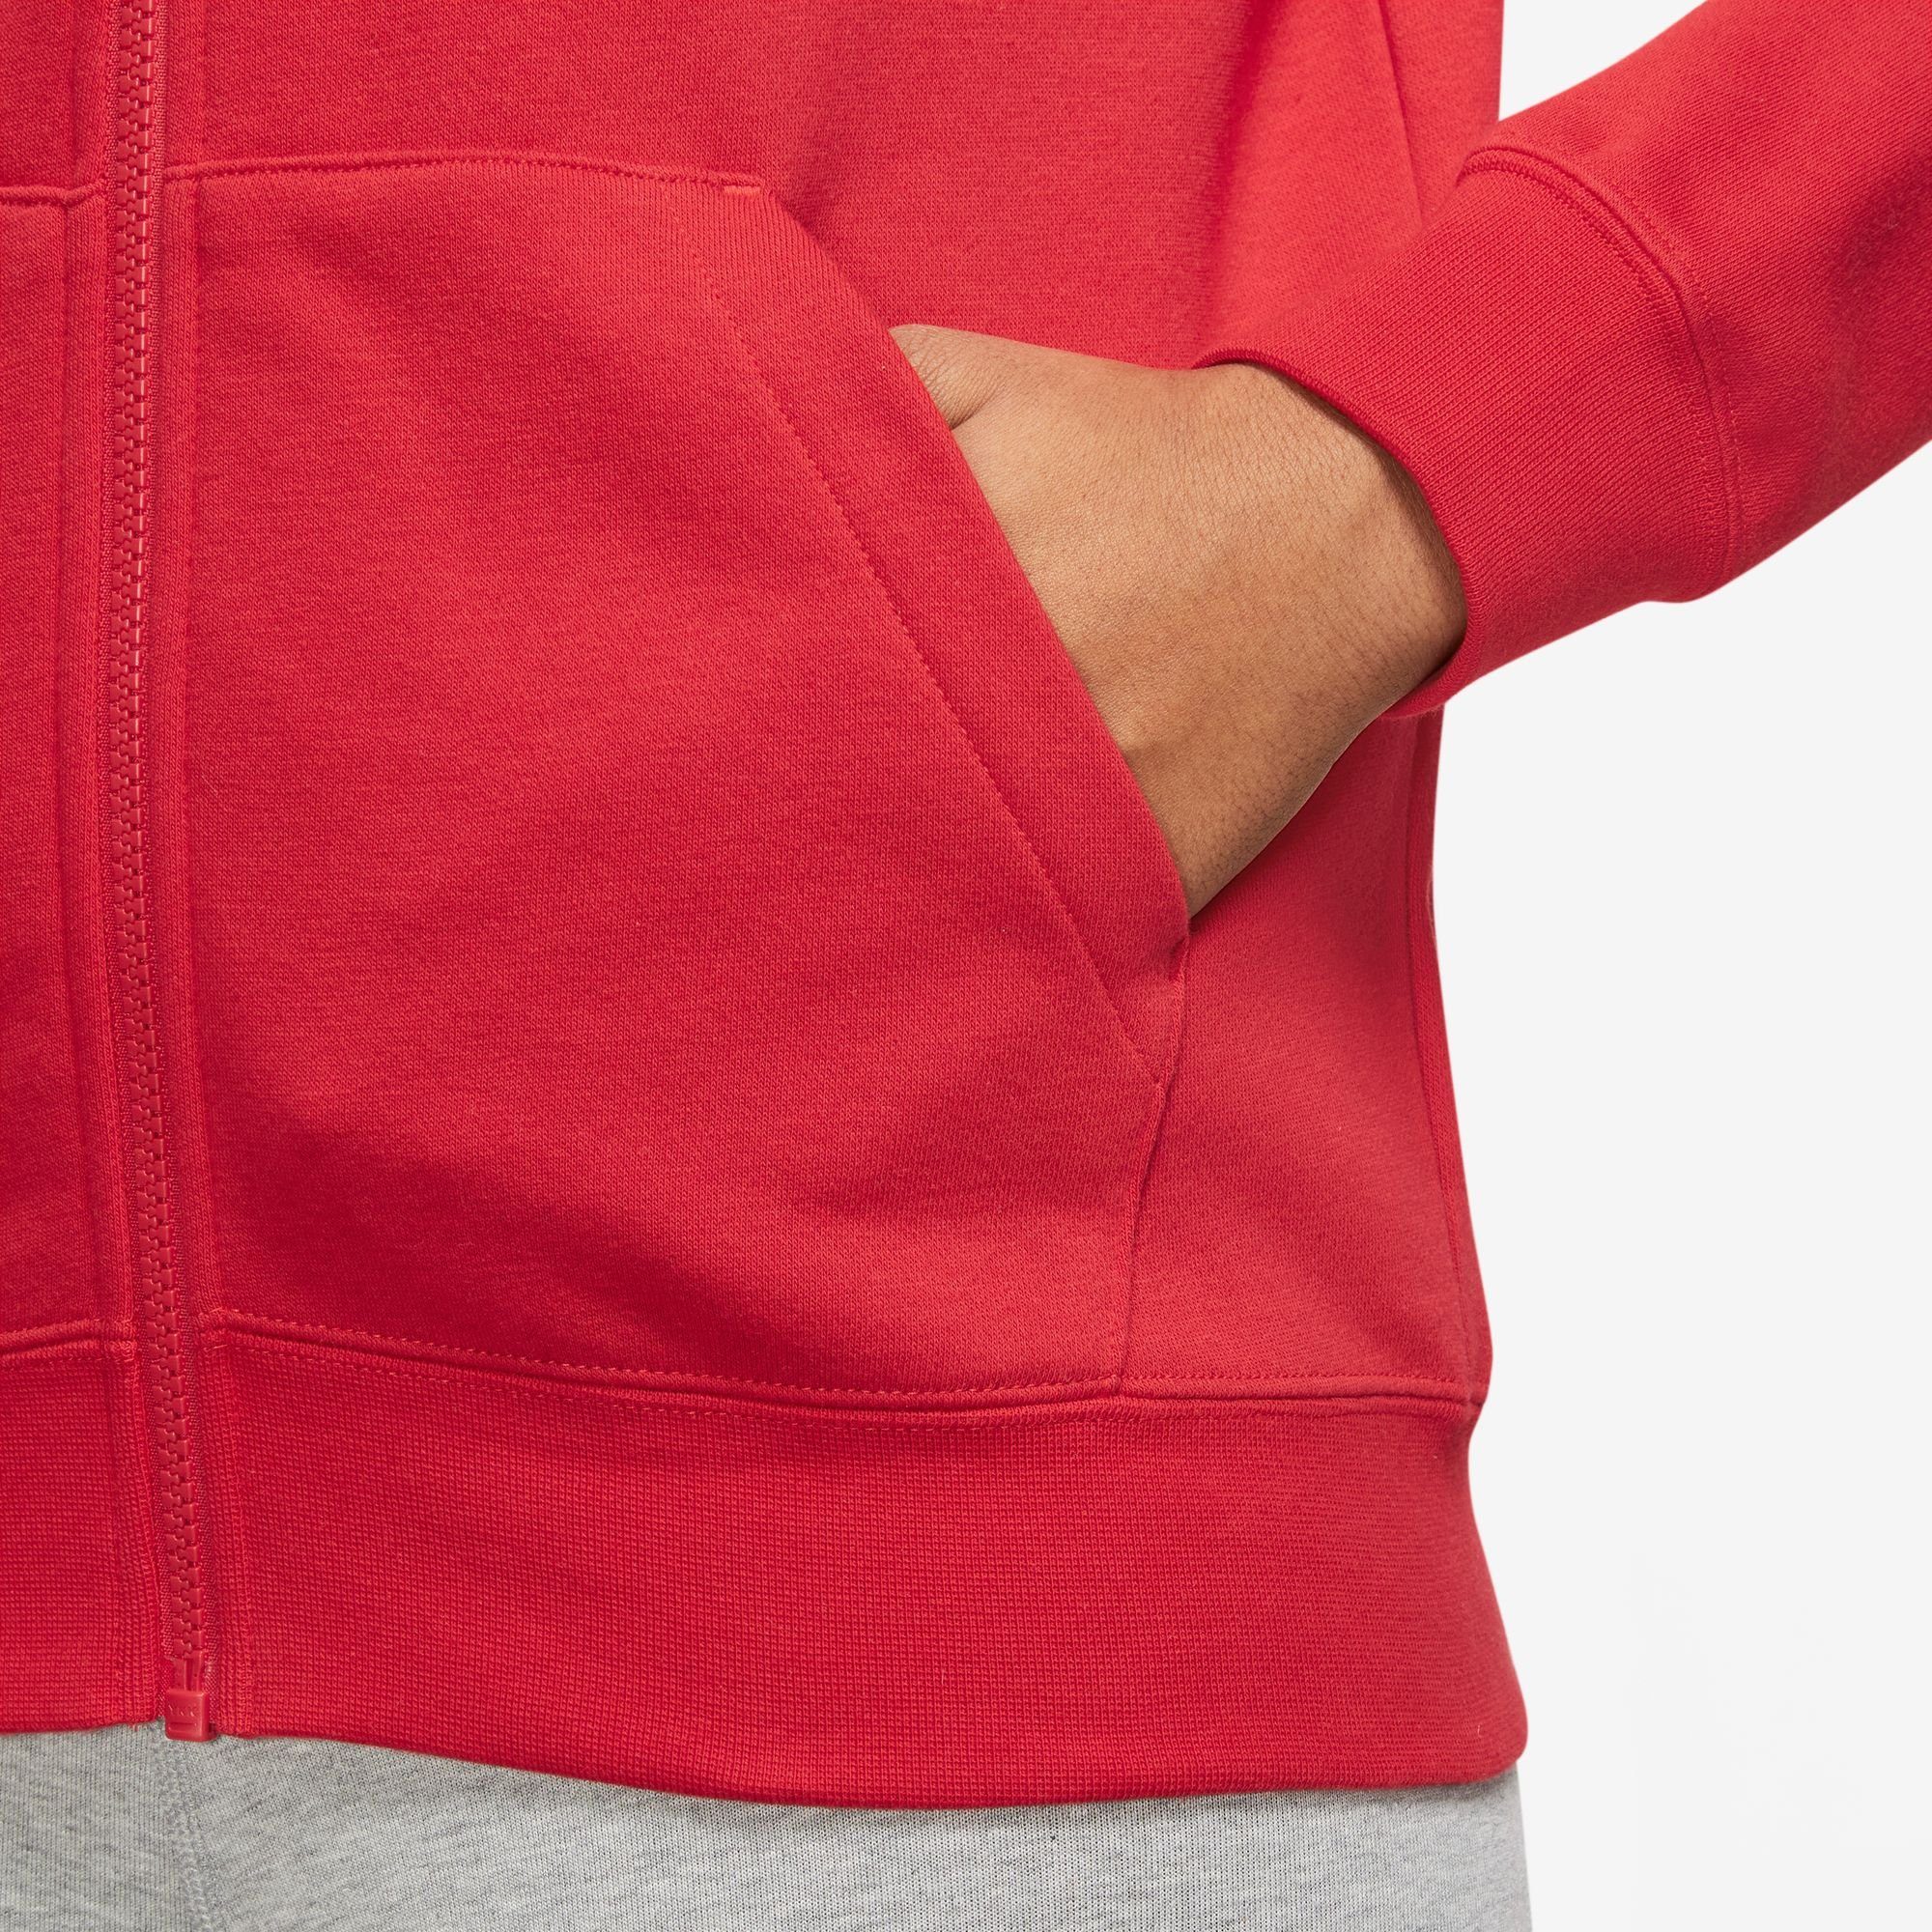 UNIVERSITY Women's Fleece Kapuzensweatjacke Full-Zip Club RED/WHITE Nike Sportswear Hoodie